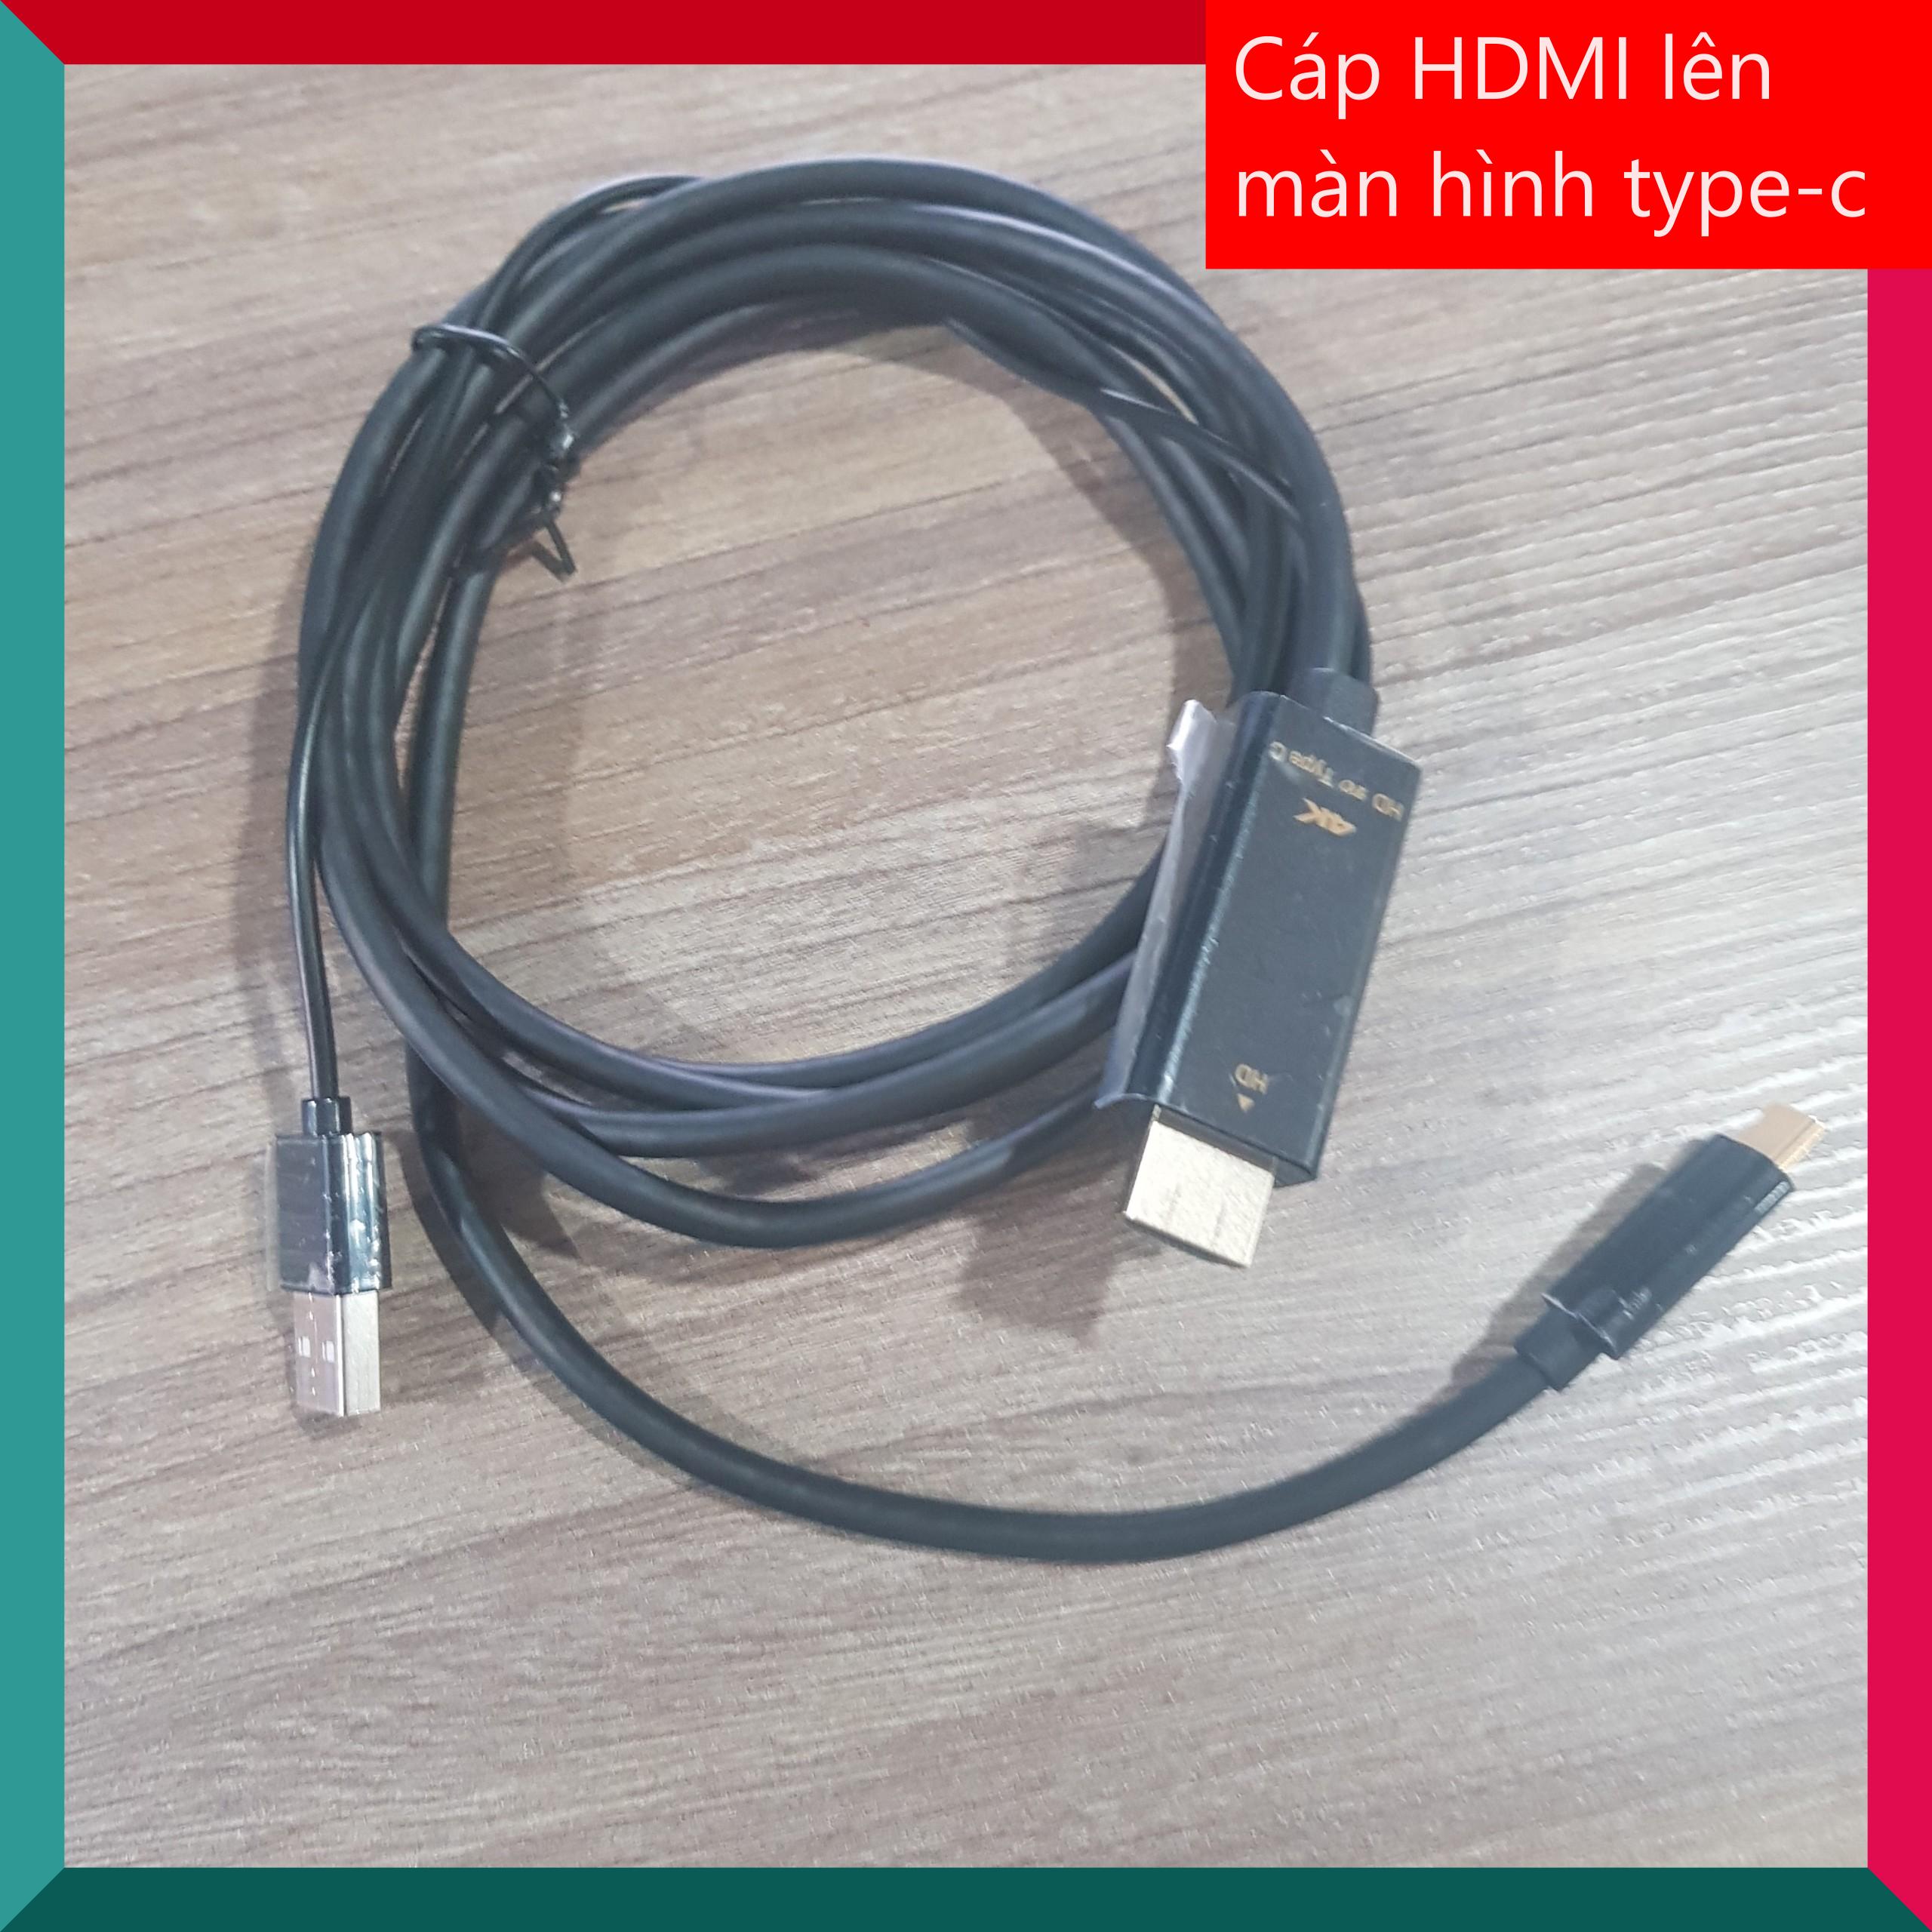 Cáp chuyển HDMI lên màn hình type c, kết nối laptop, ps4, pc từ cổng hdmi lên màn hình type c